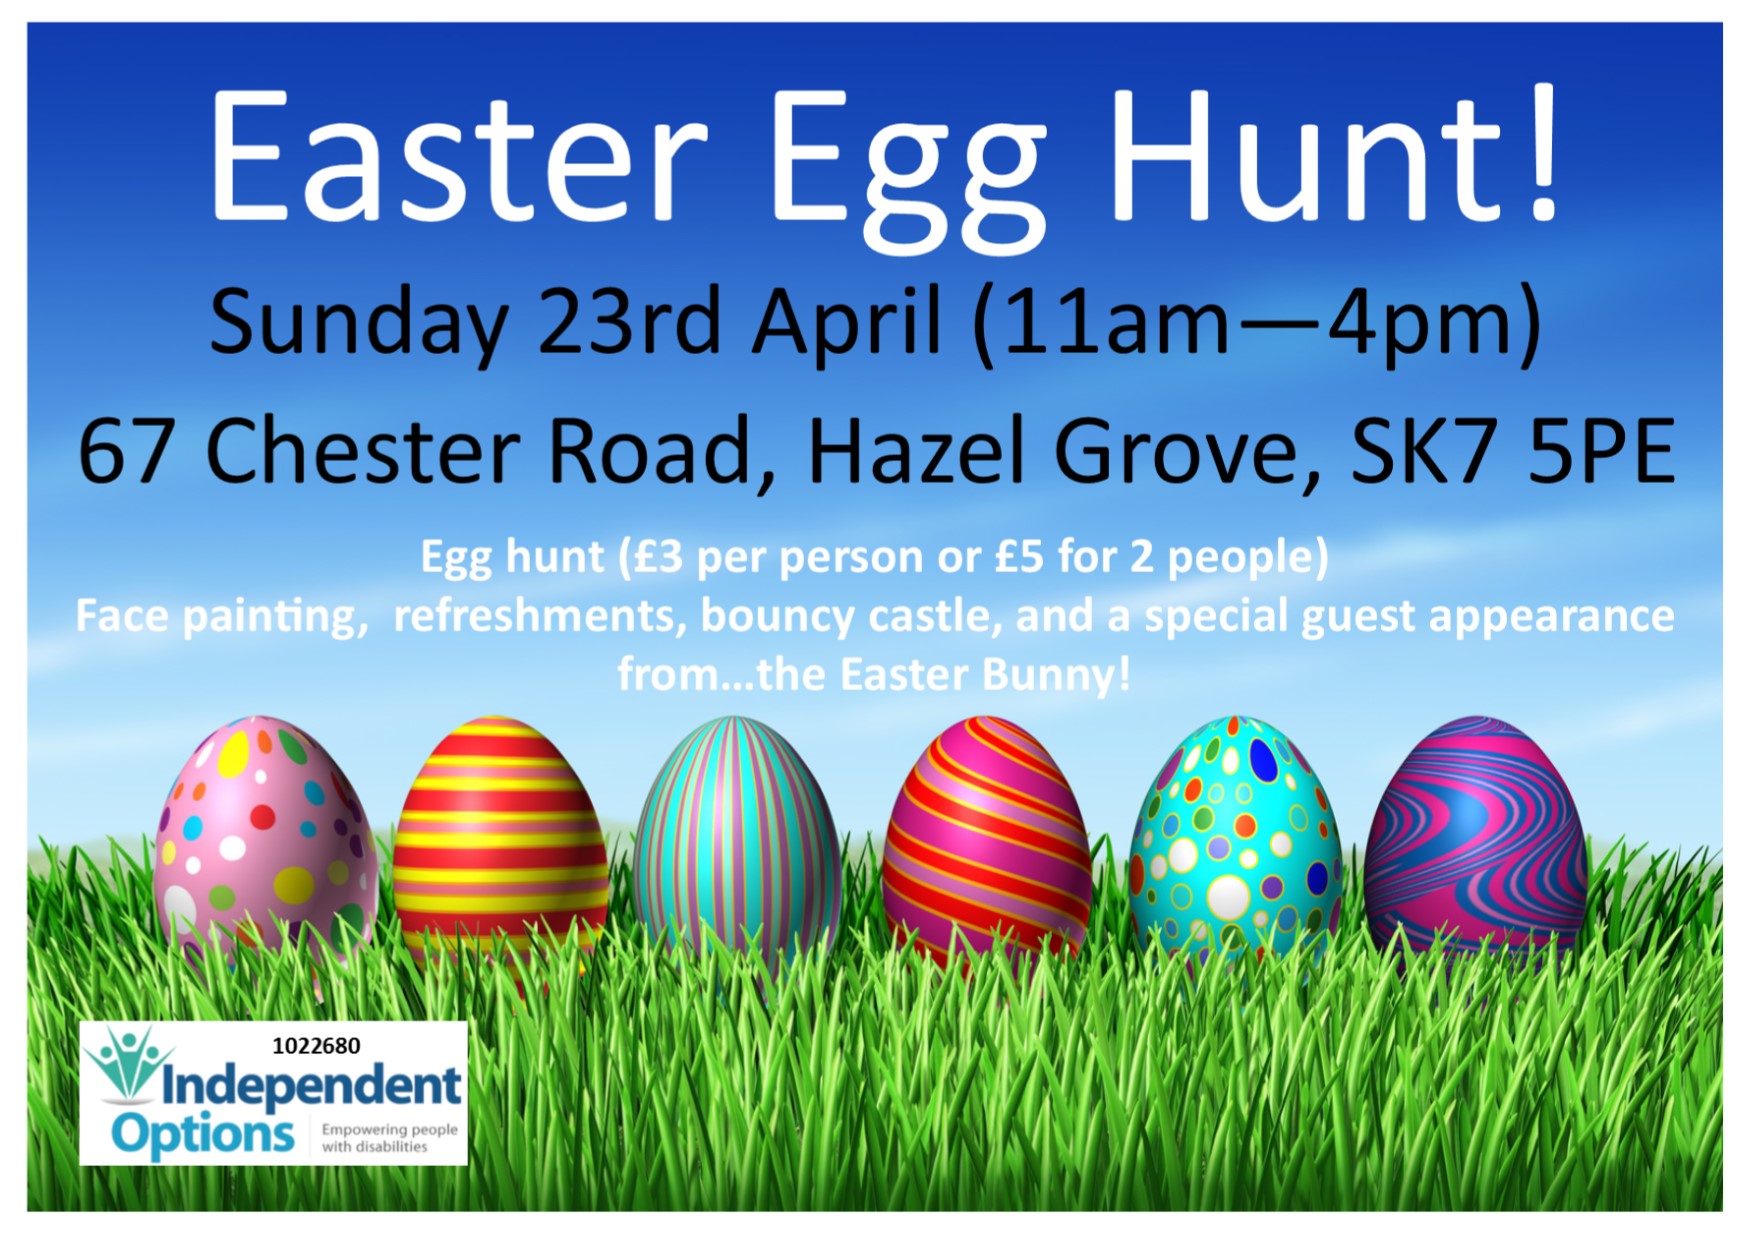 Easter Egg Hunt - Independent Options (North West) .